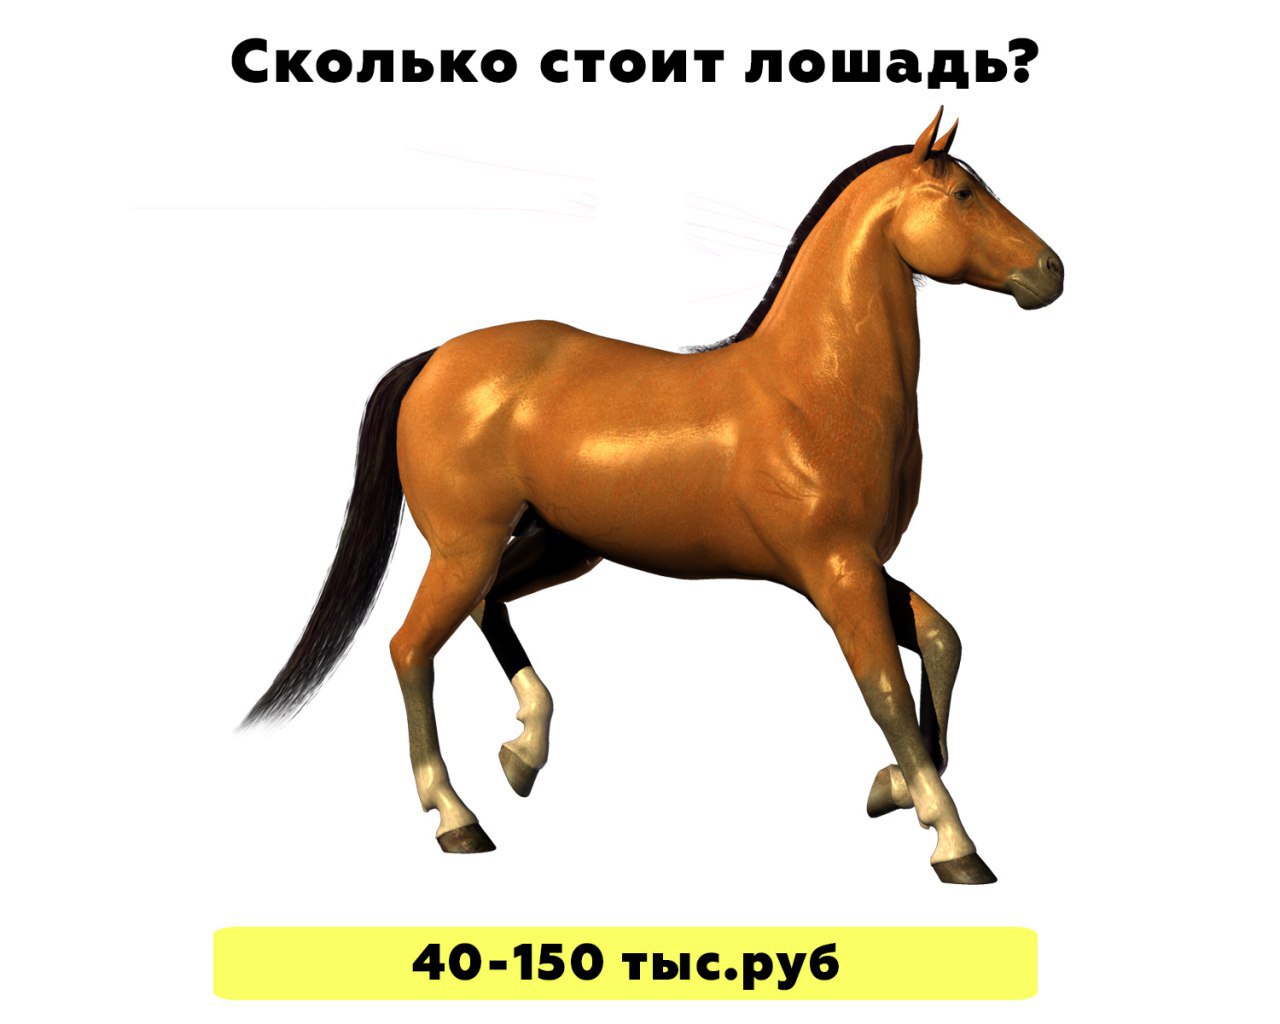 Сколько лошадке лет